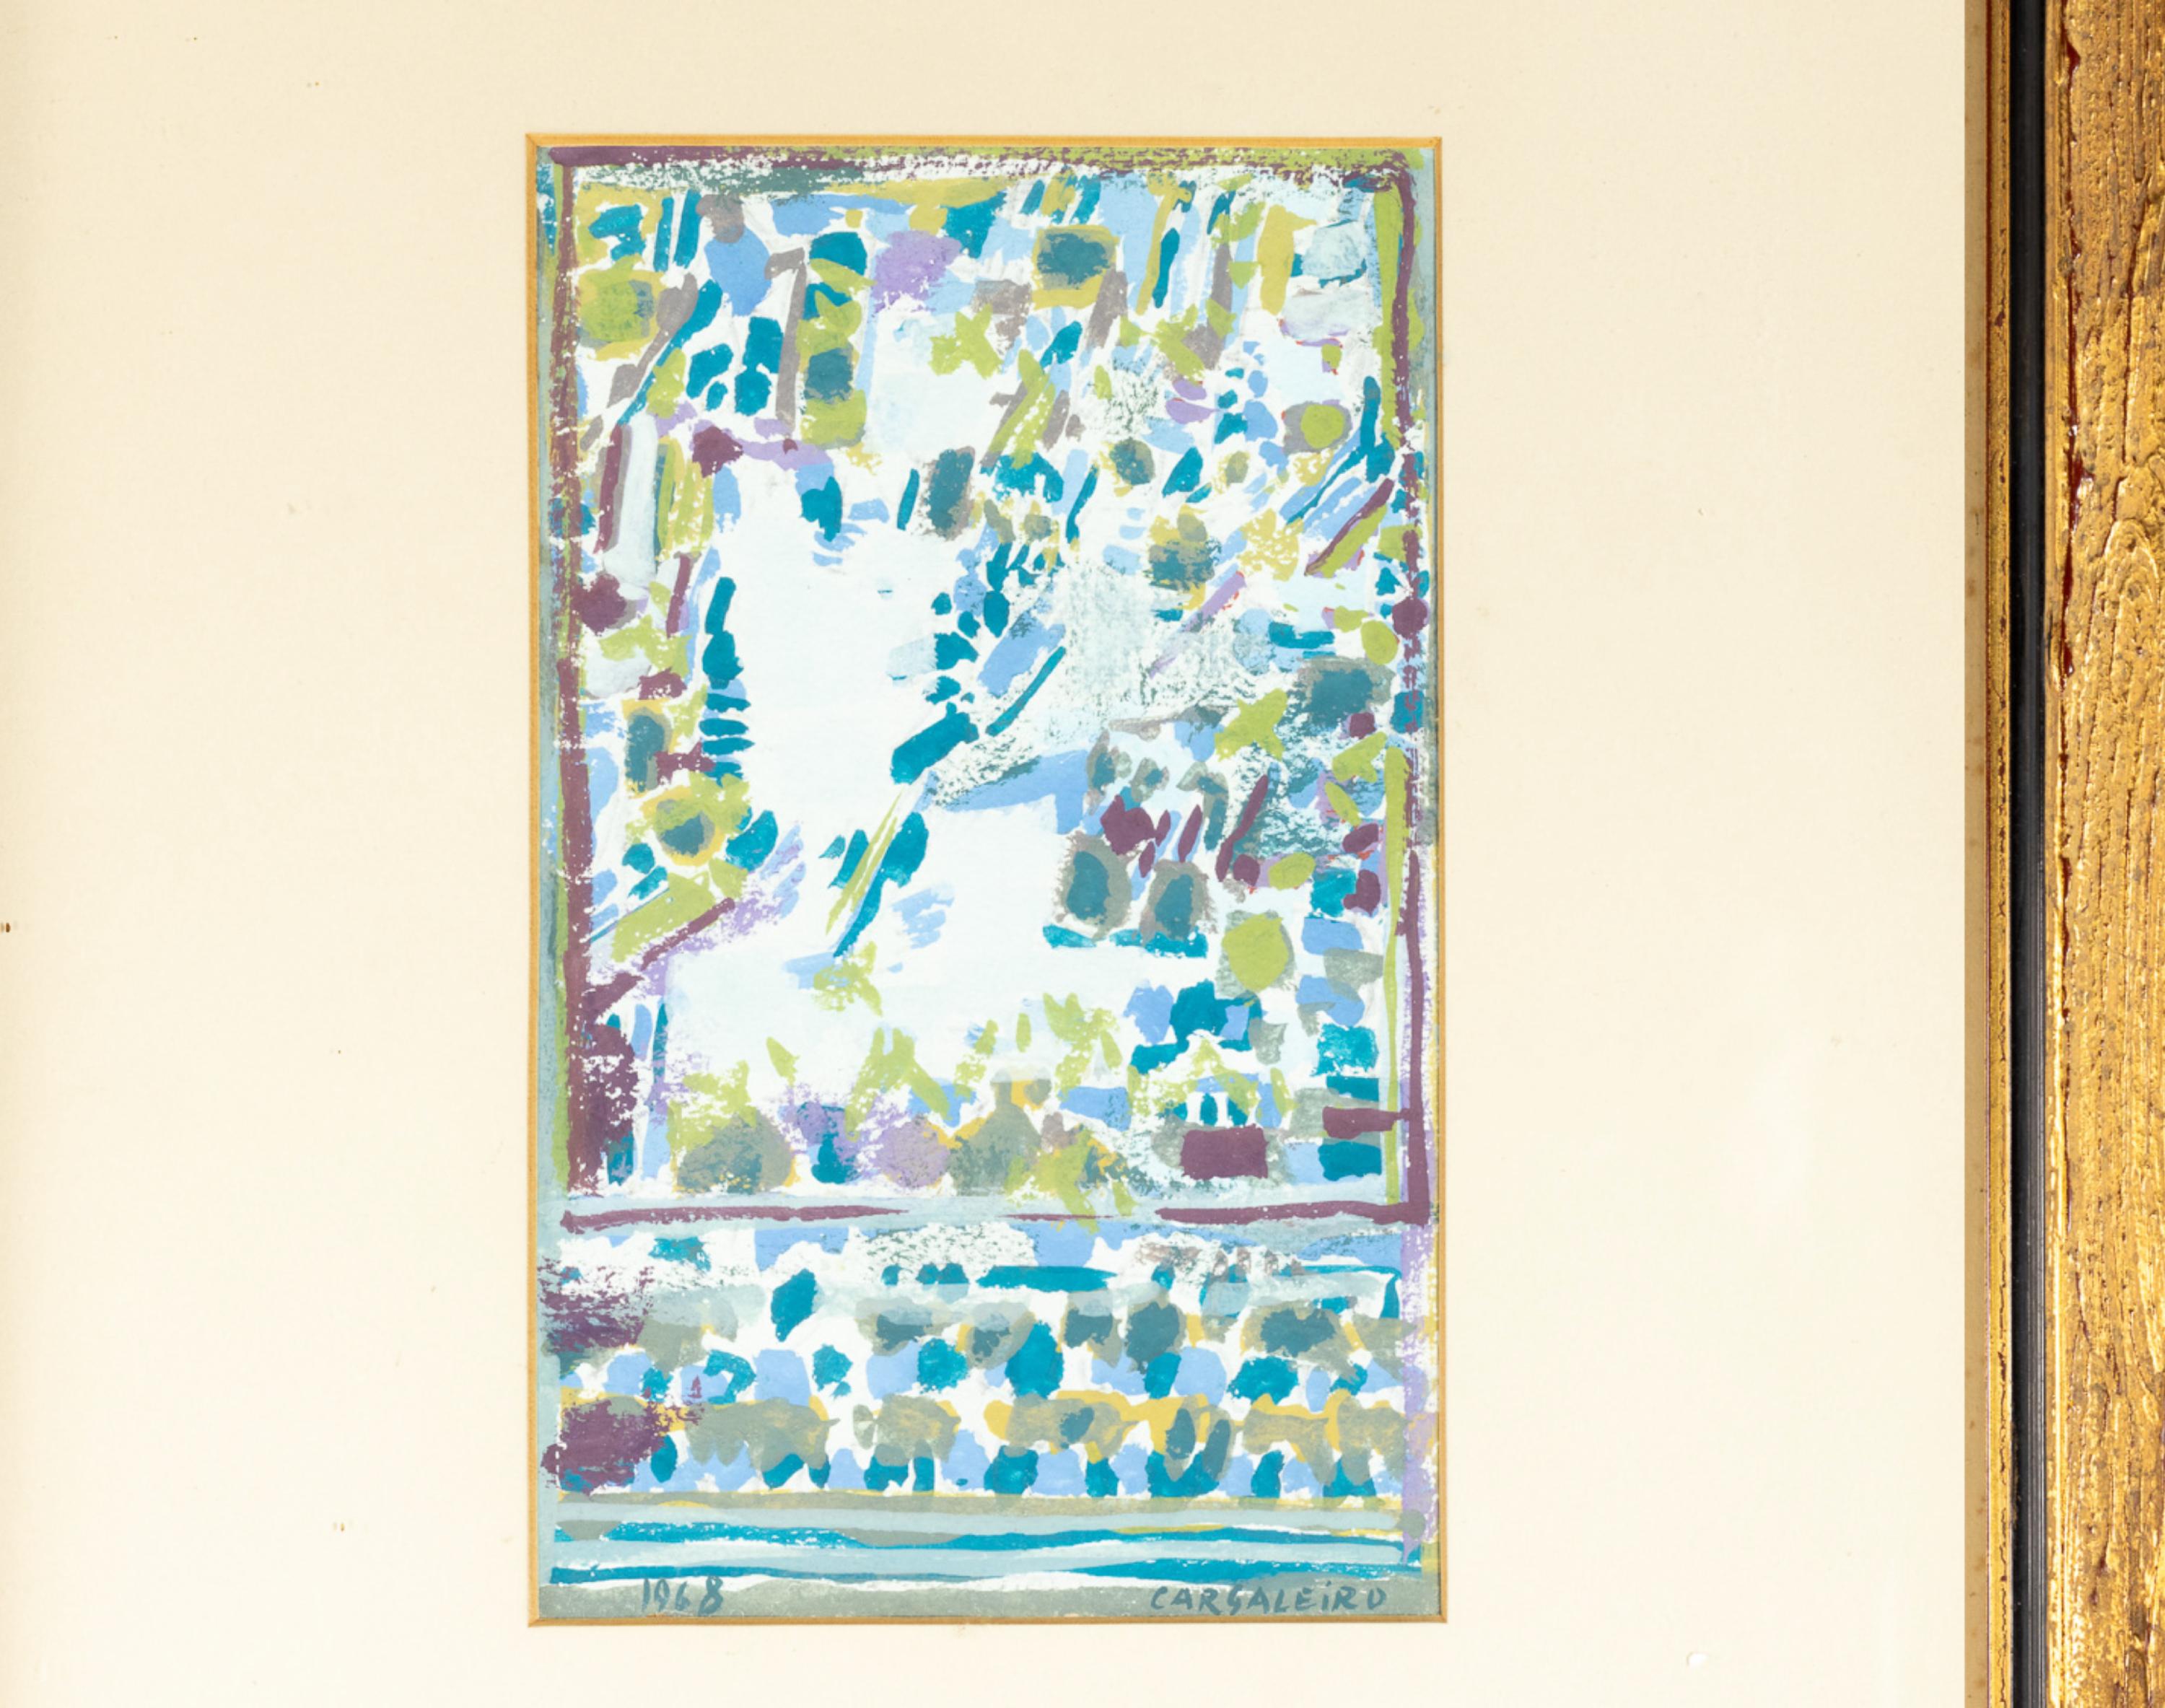 Ein modernistisches Aquarell mit blauem und grünem Motiv des portugiesischen Meistermalers Manuel Cargaleiro, signiert, datiert und beglaubigt - 1968. 

In der internationalen Kunstszene erlangte Manuel Cargareiro Berühmtheit, indem er seine Werke